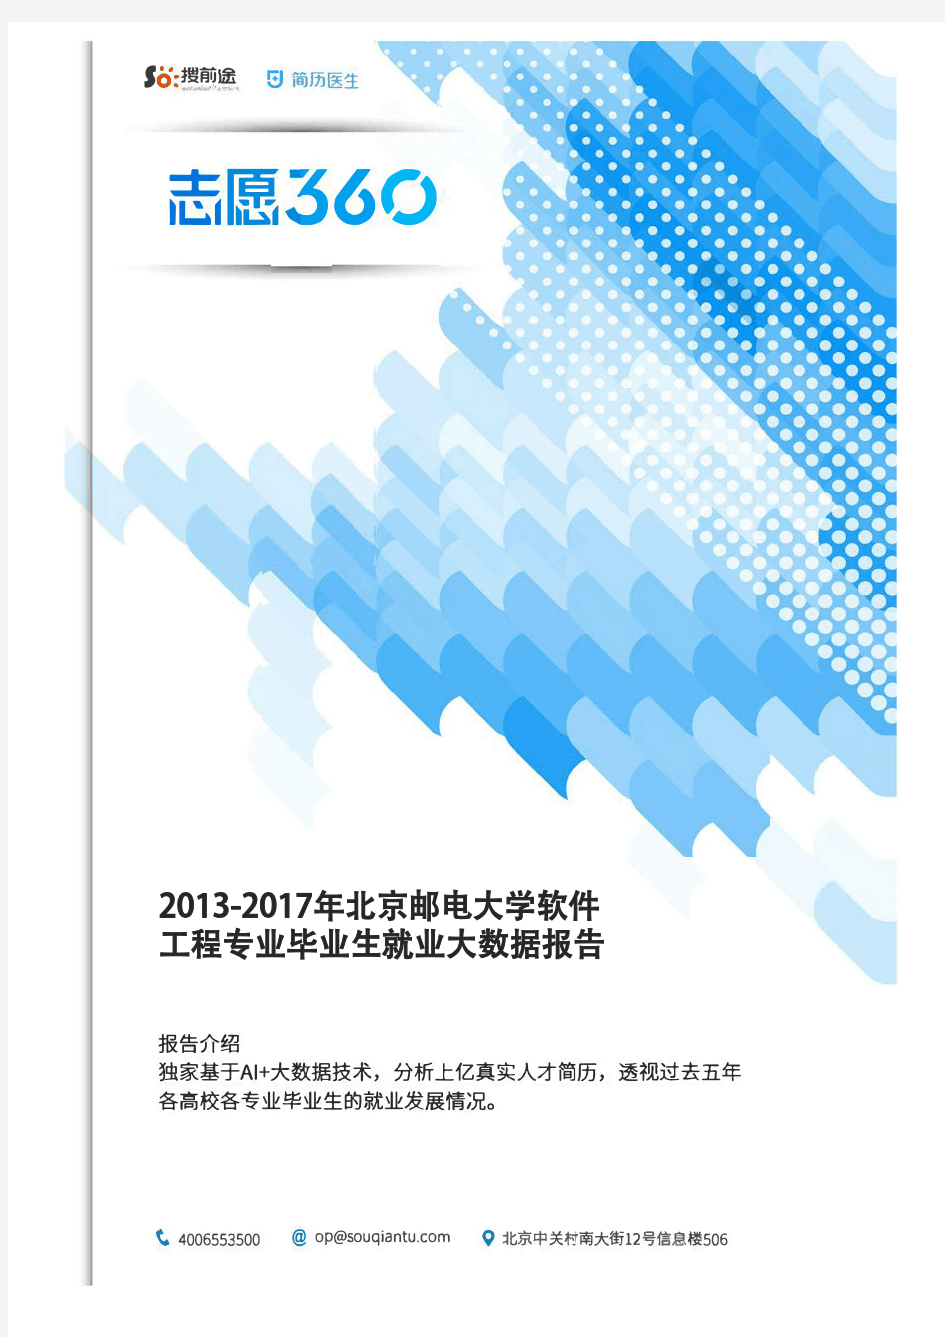 2013-2017年北京邮电大学软件工程专业毕业生就业大数据报告